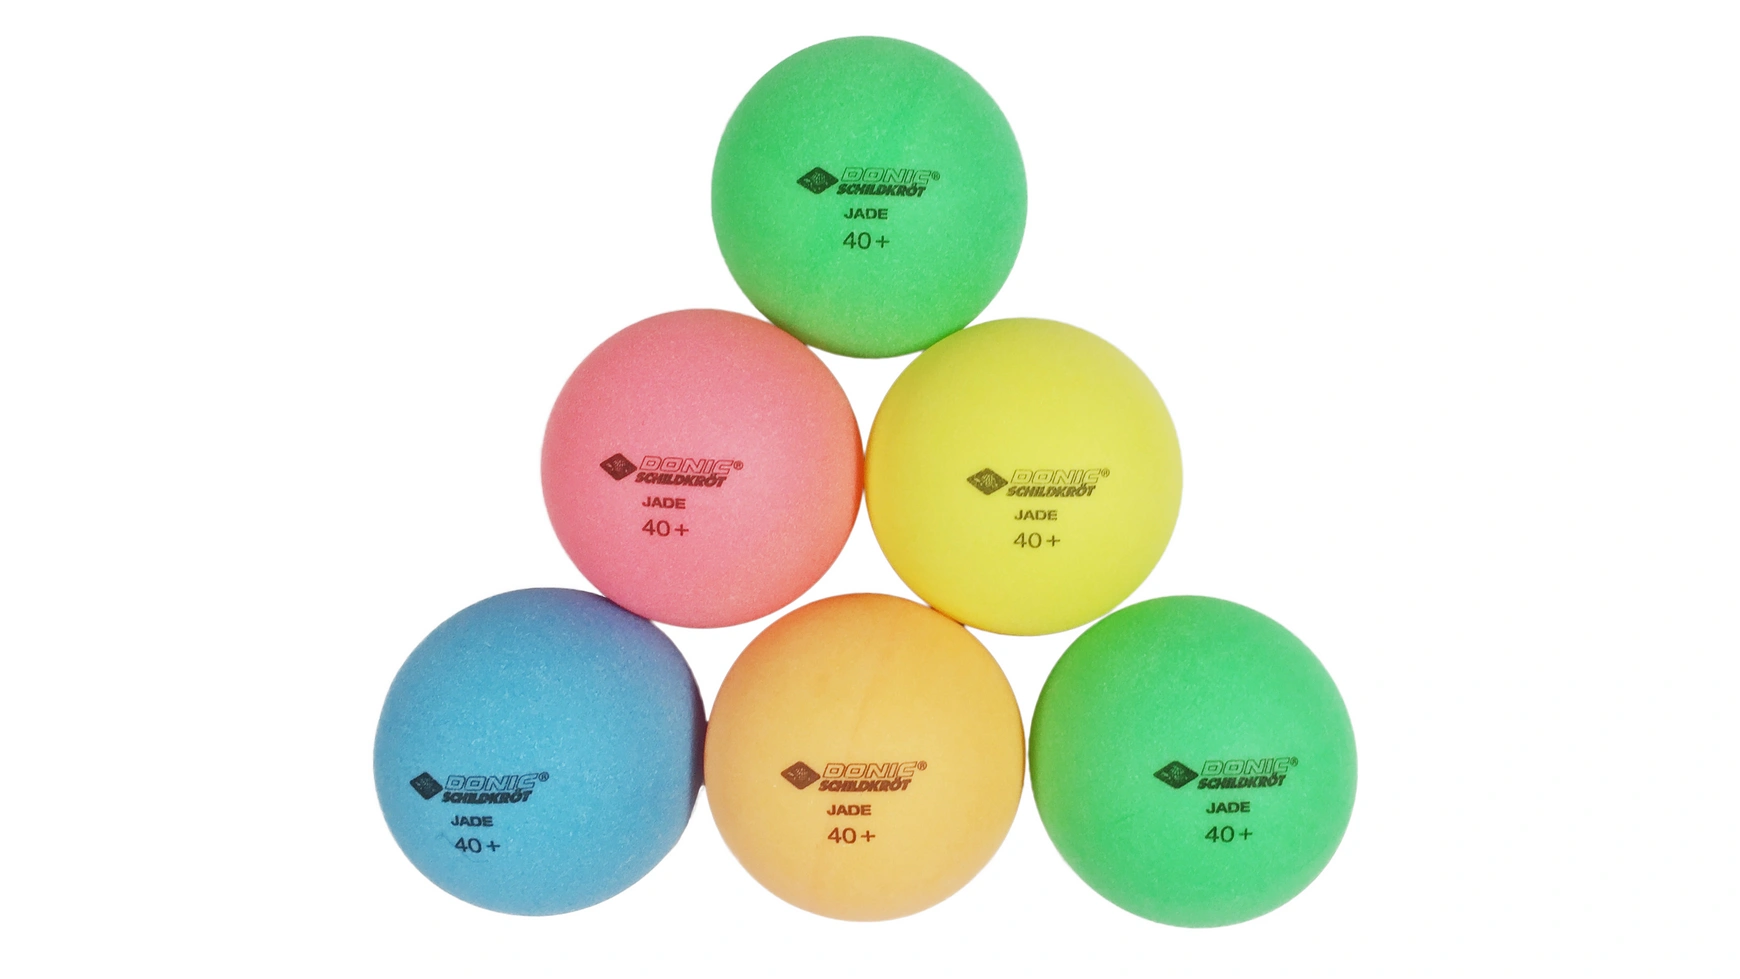 Donic Schildkröt Мяч для настольного тенниса Color Popps, 6 цветных шариков качества Poly 40+ donic мячи donic schildkroft 6 шт white